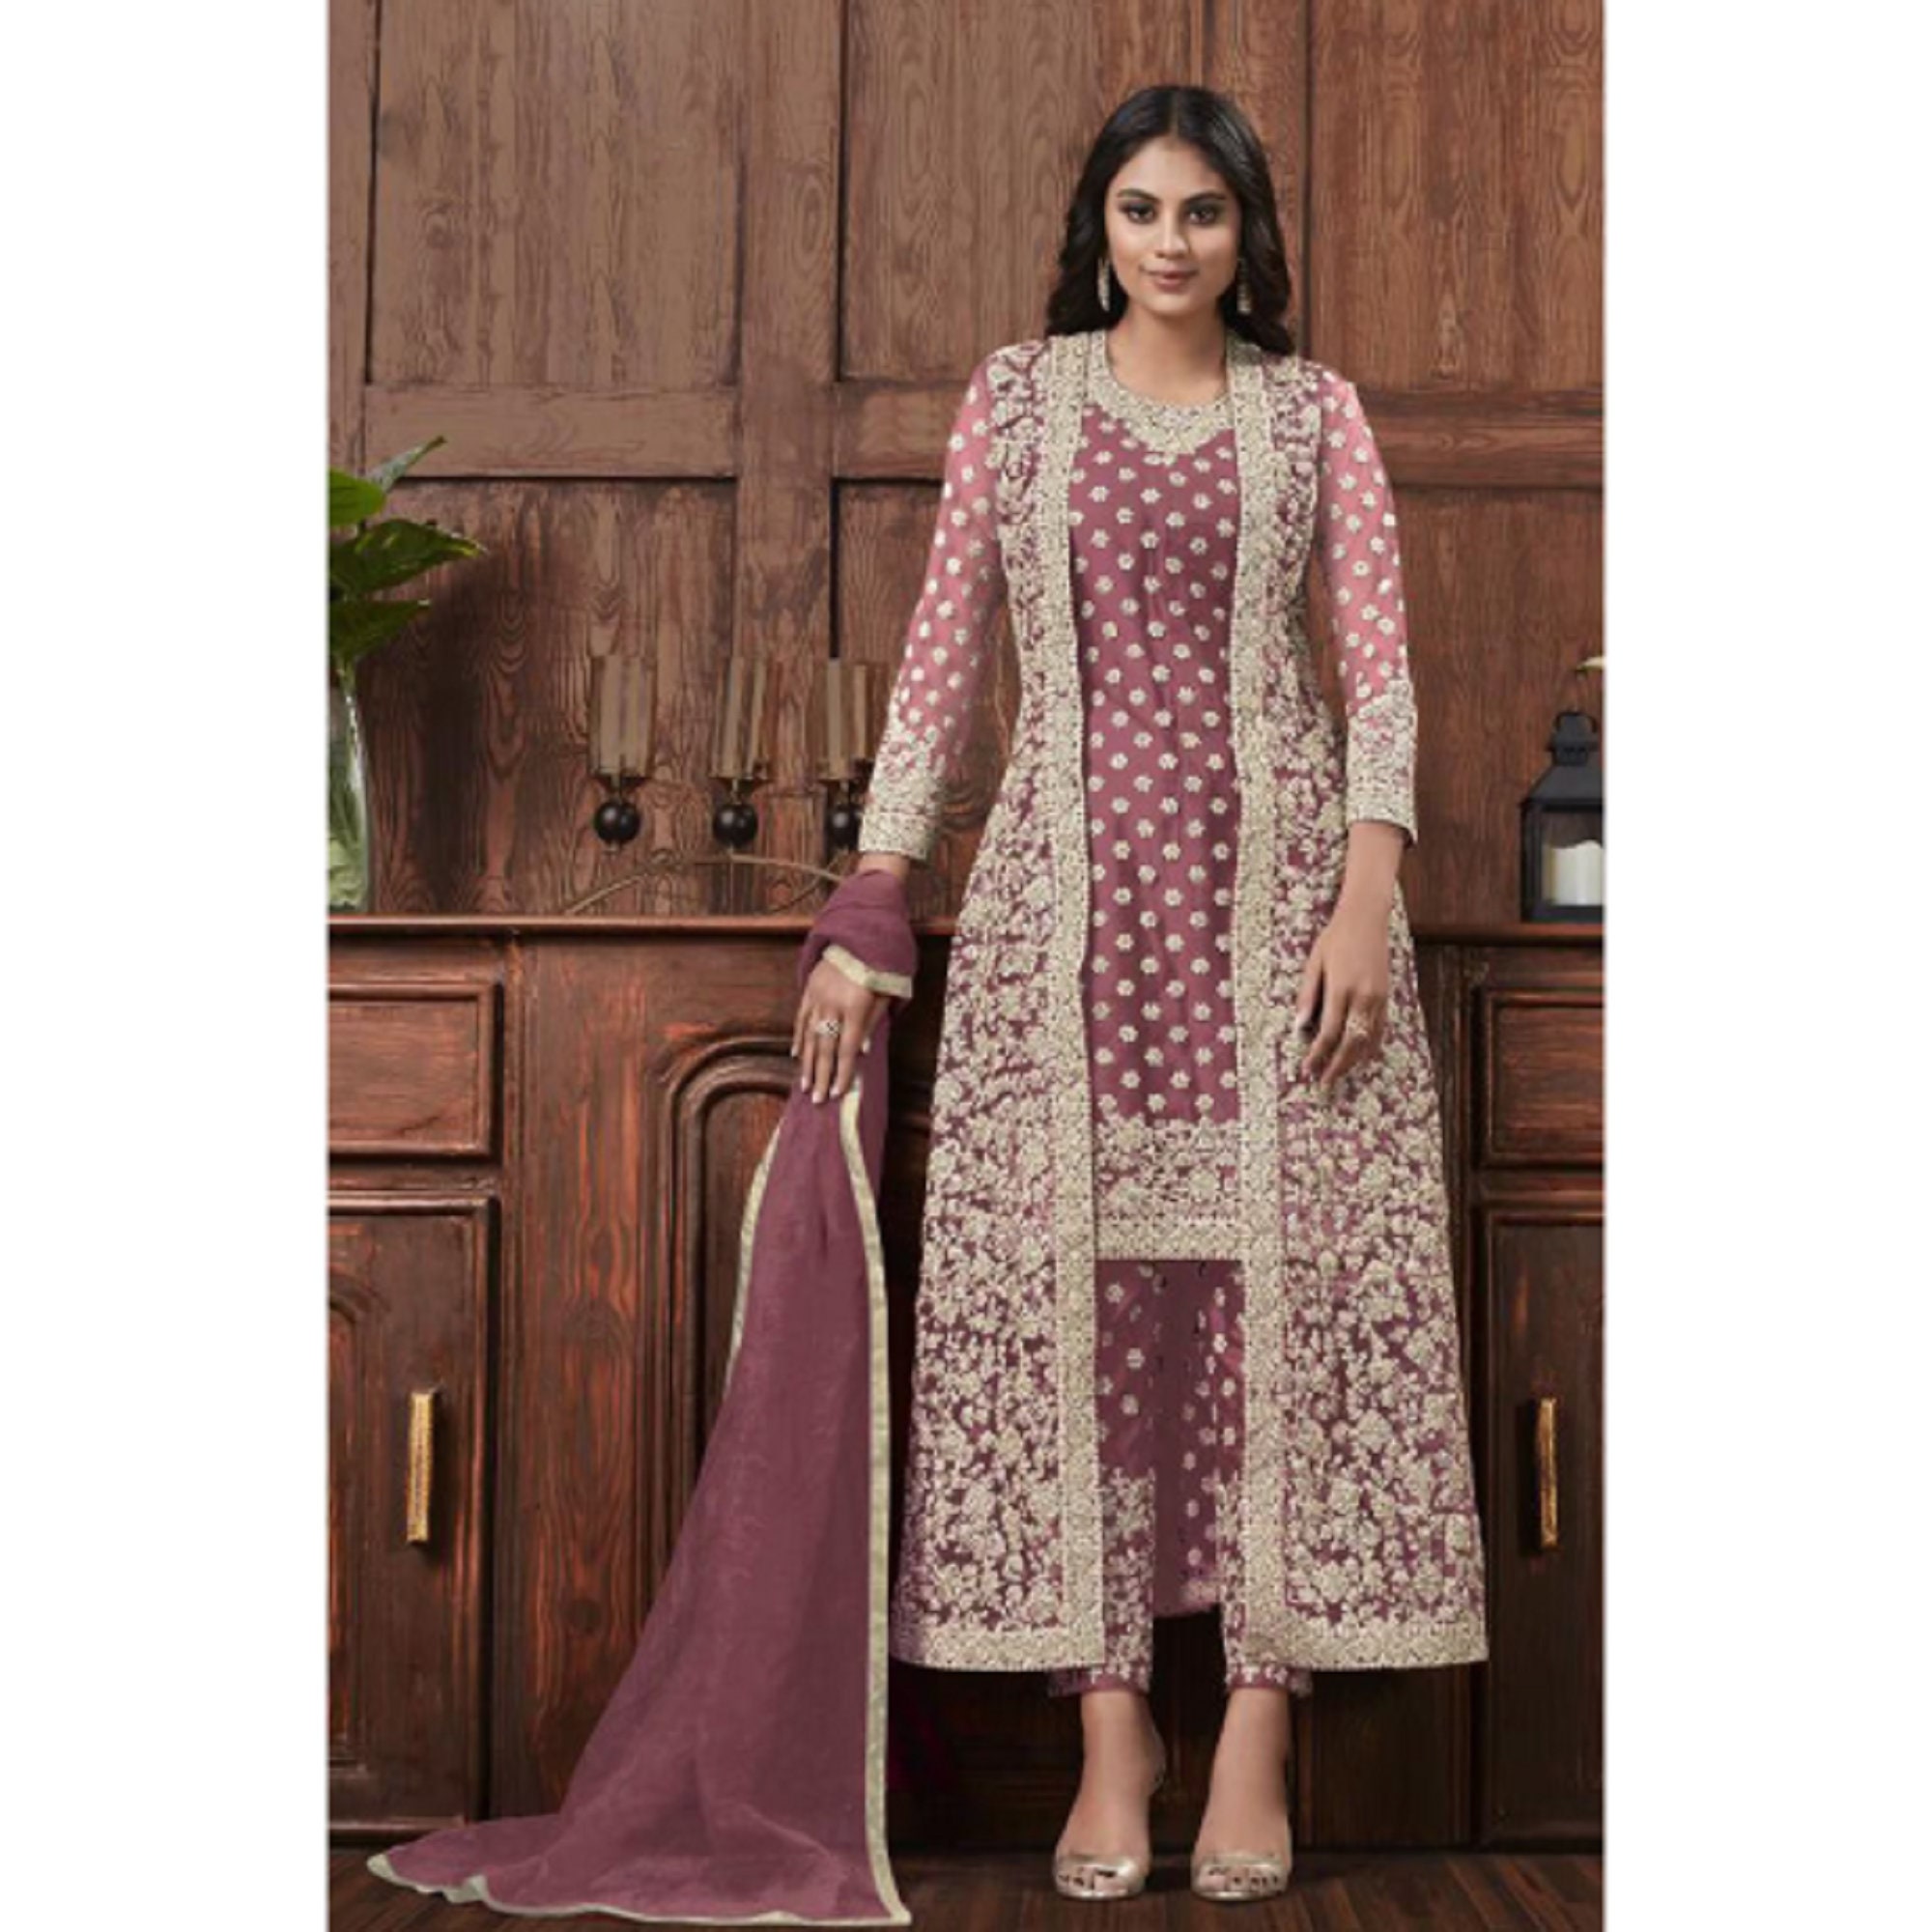 THIRA Crepe Printed Salwar Suit Material Price in India - Buy THIRA Crepe  Printed Salwar Suit Material online at Flipkart.com